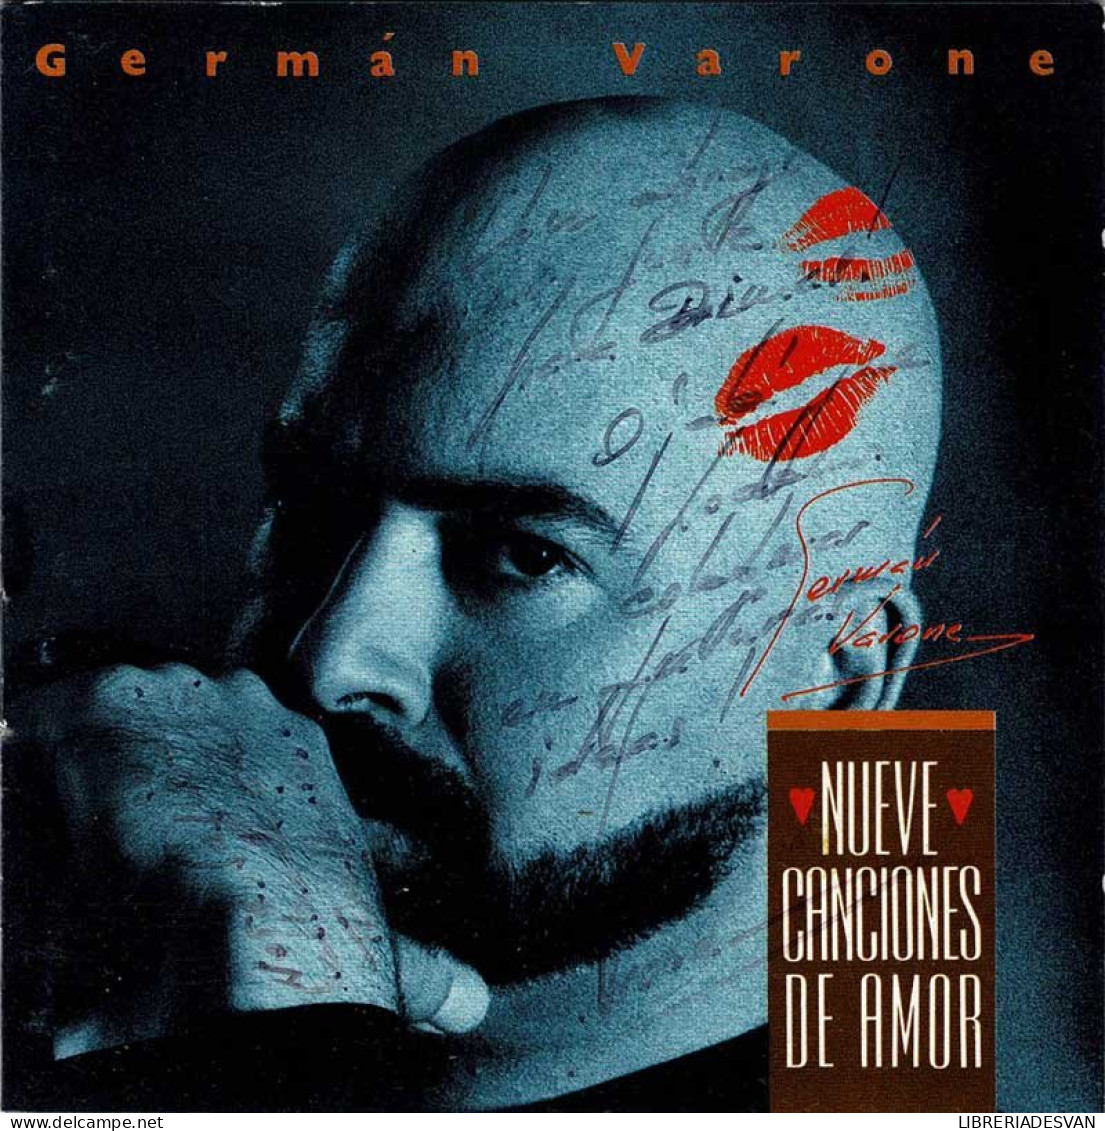 German Varone - Nueve Canciones De Amor. CD - Disco, Pop